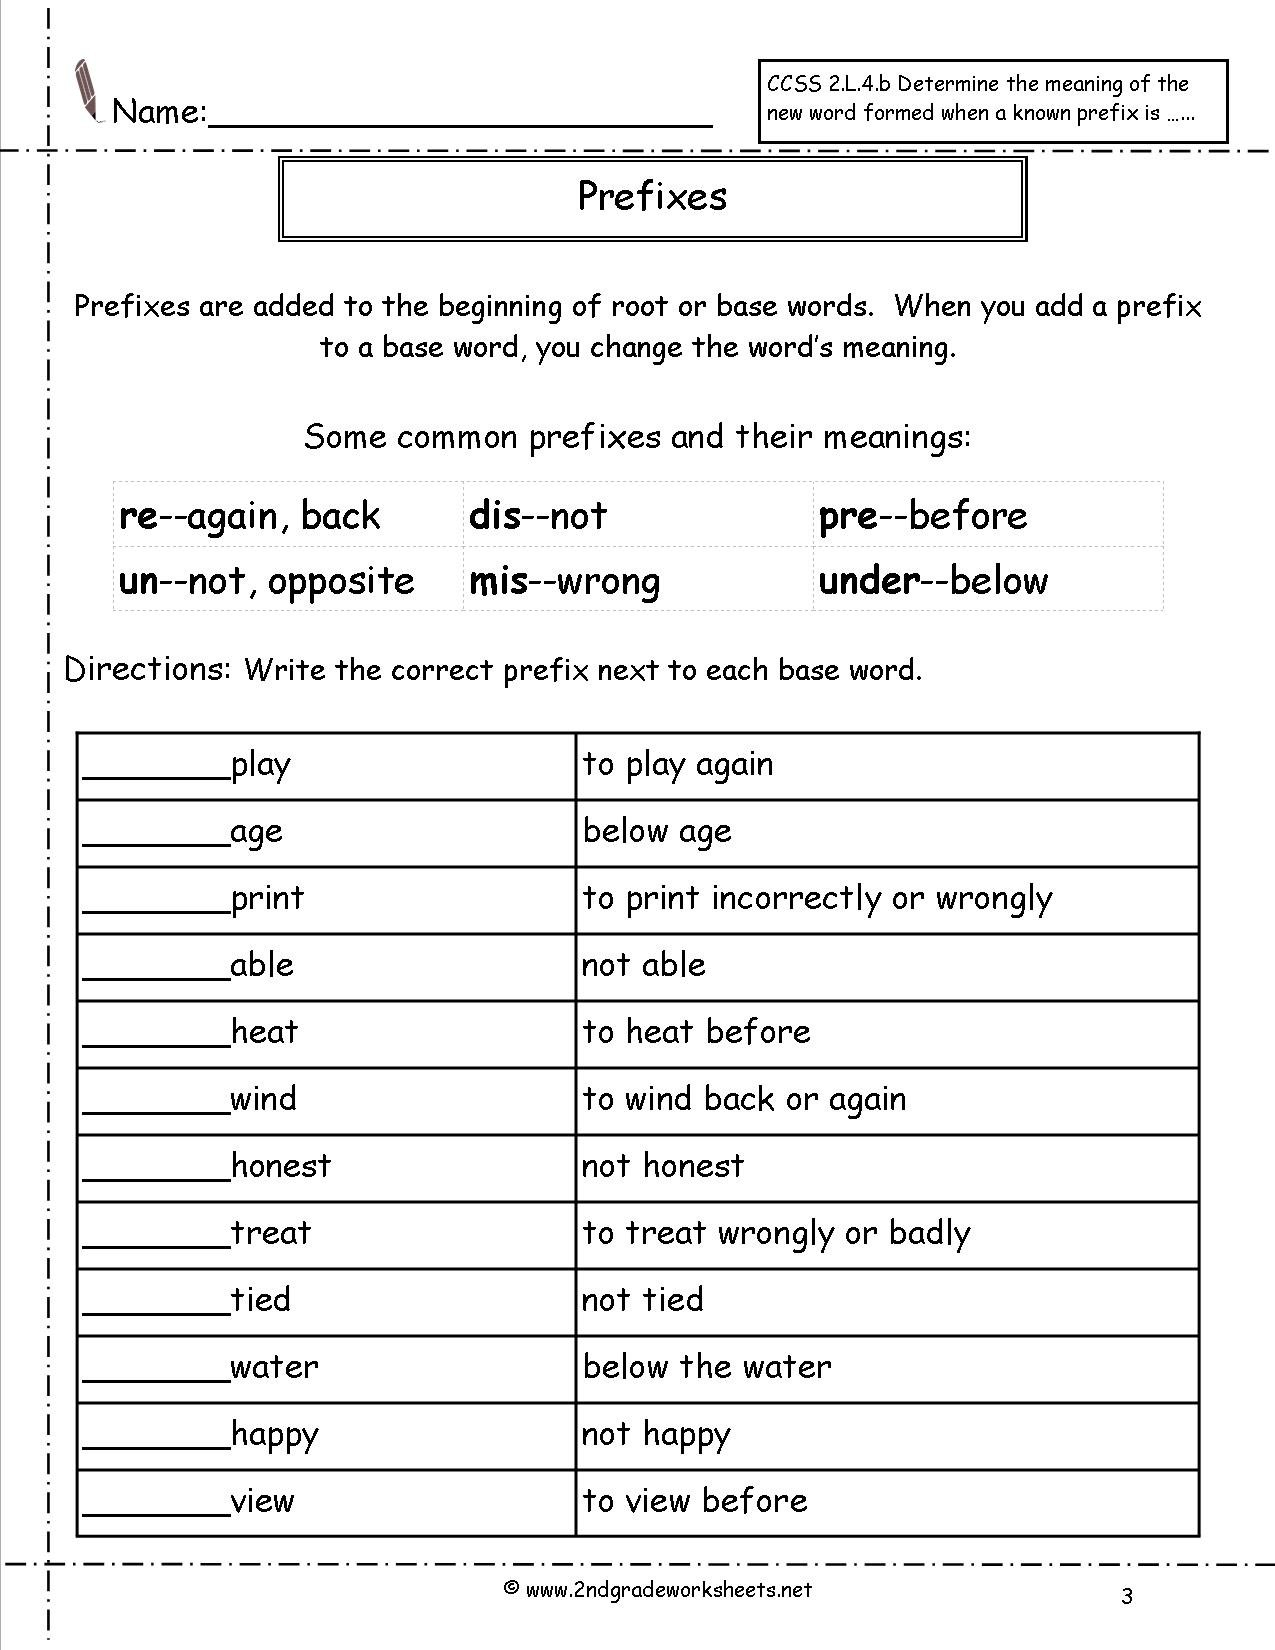 Second Grade Prefixes Worksheets For Prefix Worksheets 3Rd Grade